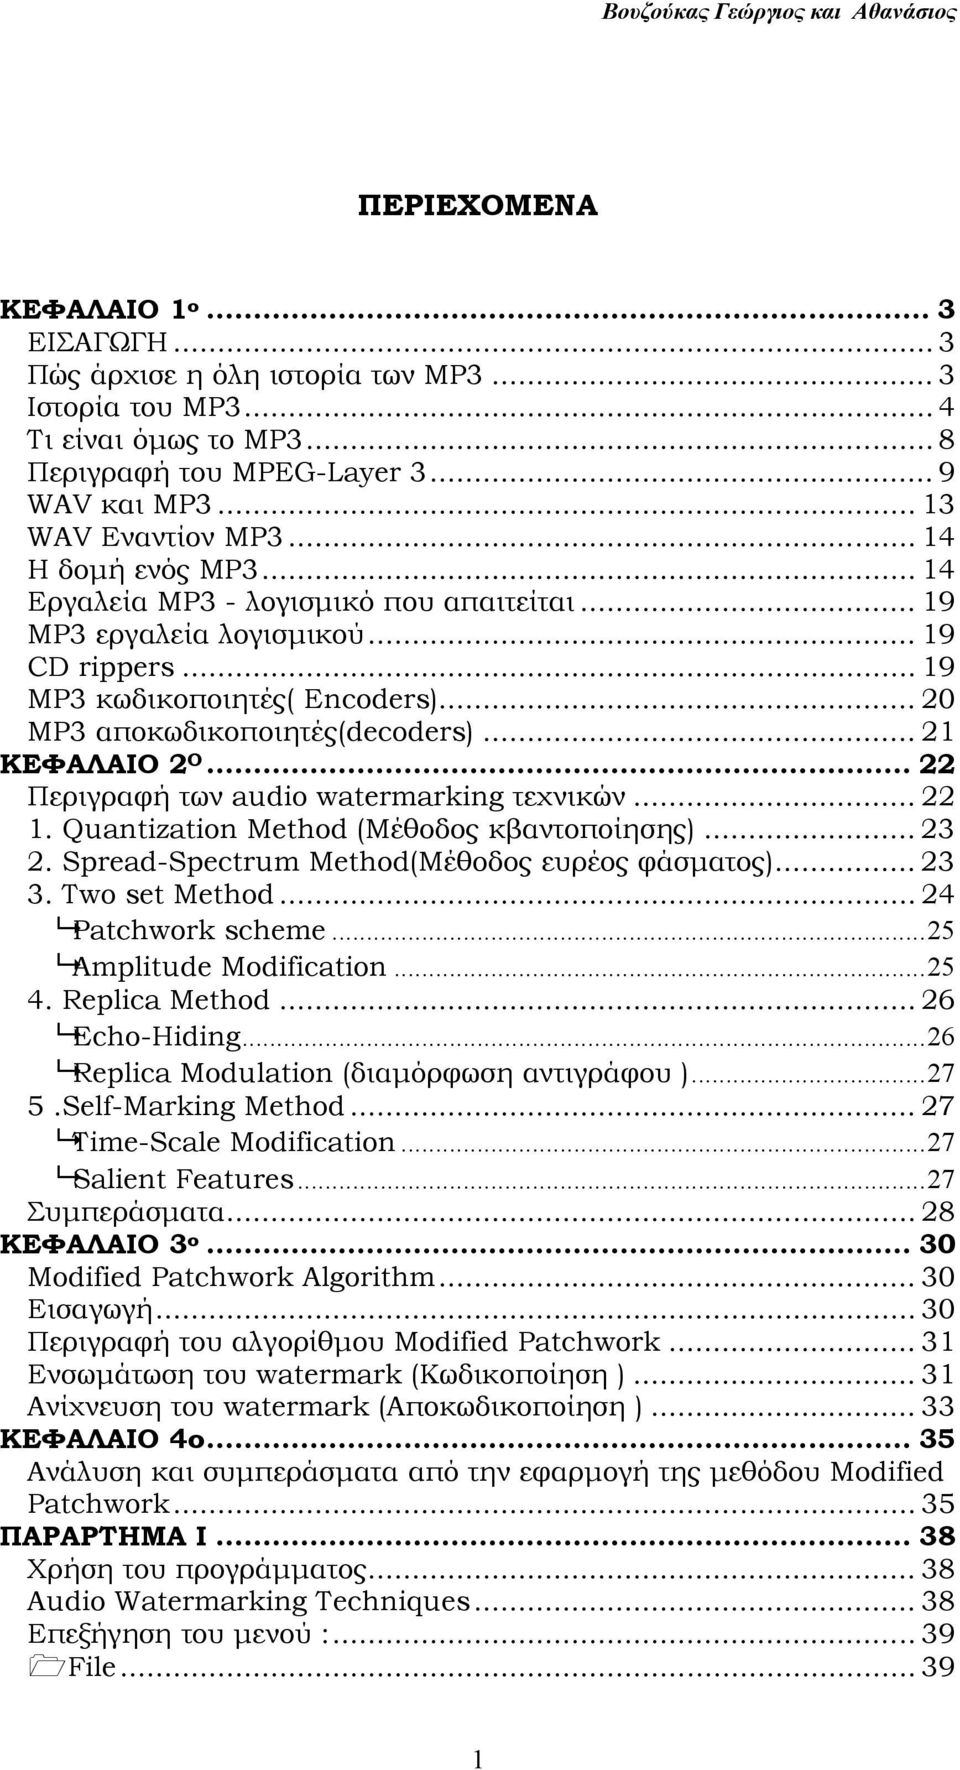 .. 21 ΚΕΦΑΛΑΙΟ 2 Ο... 22 Περιγραφή των audio watermarking τεχνικών... 22 1. Quantization Method (Μέθοδος κβαντοποίησης)... 23 2. Spread-Spectrum Method(Μέθοδος ευρέος φάσµατος)... 23 3.